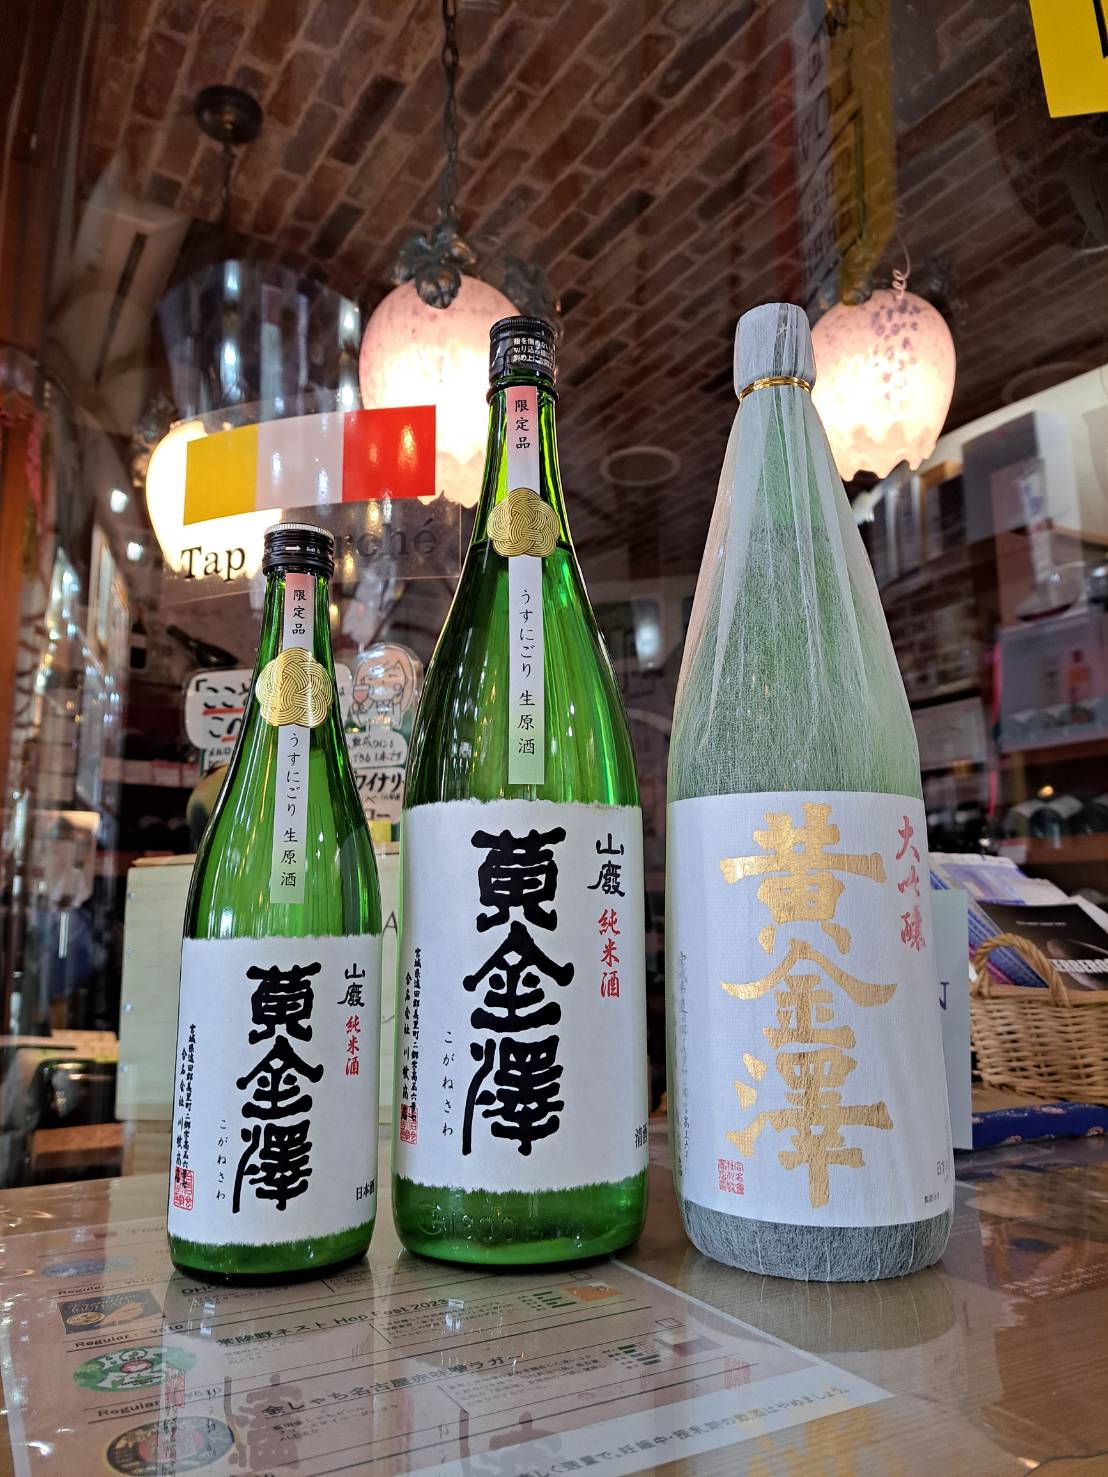 『宮城県の実力蔵、川敬商店さんが醸す黄金澤の春季限定酒が入荷しました』